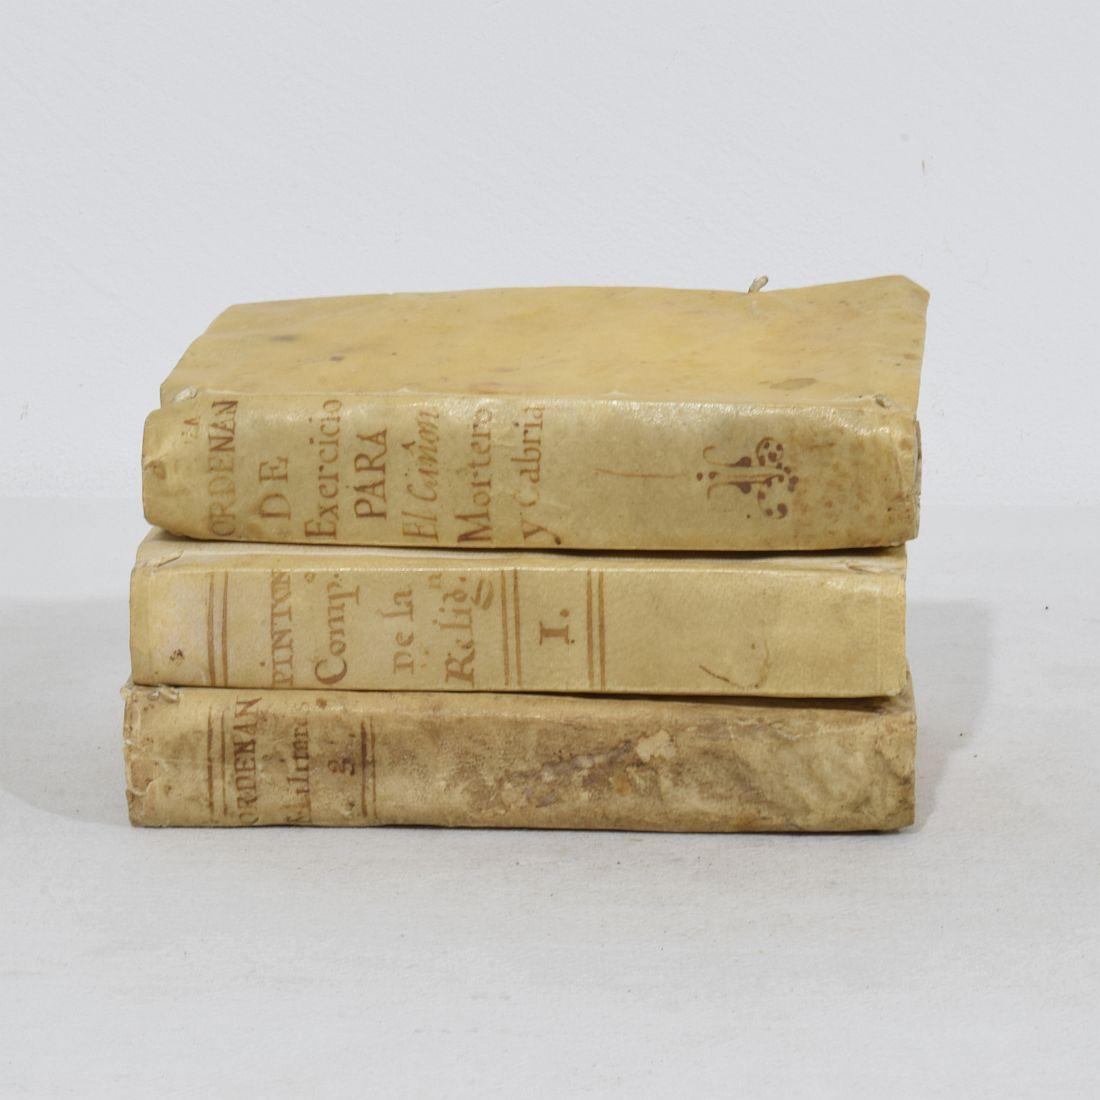 Belle collection de trois livres en vélin extrêmement altérés, Espagne 18e siècle. Usures et petites pertes
H:15,5cm  L:3cm P:11cm chaque
